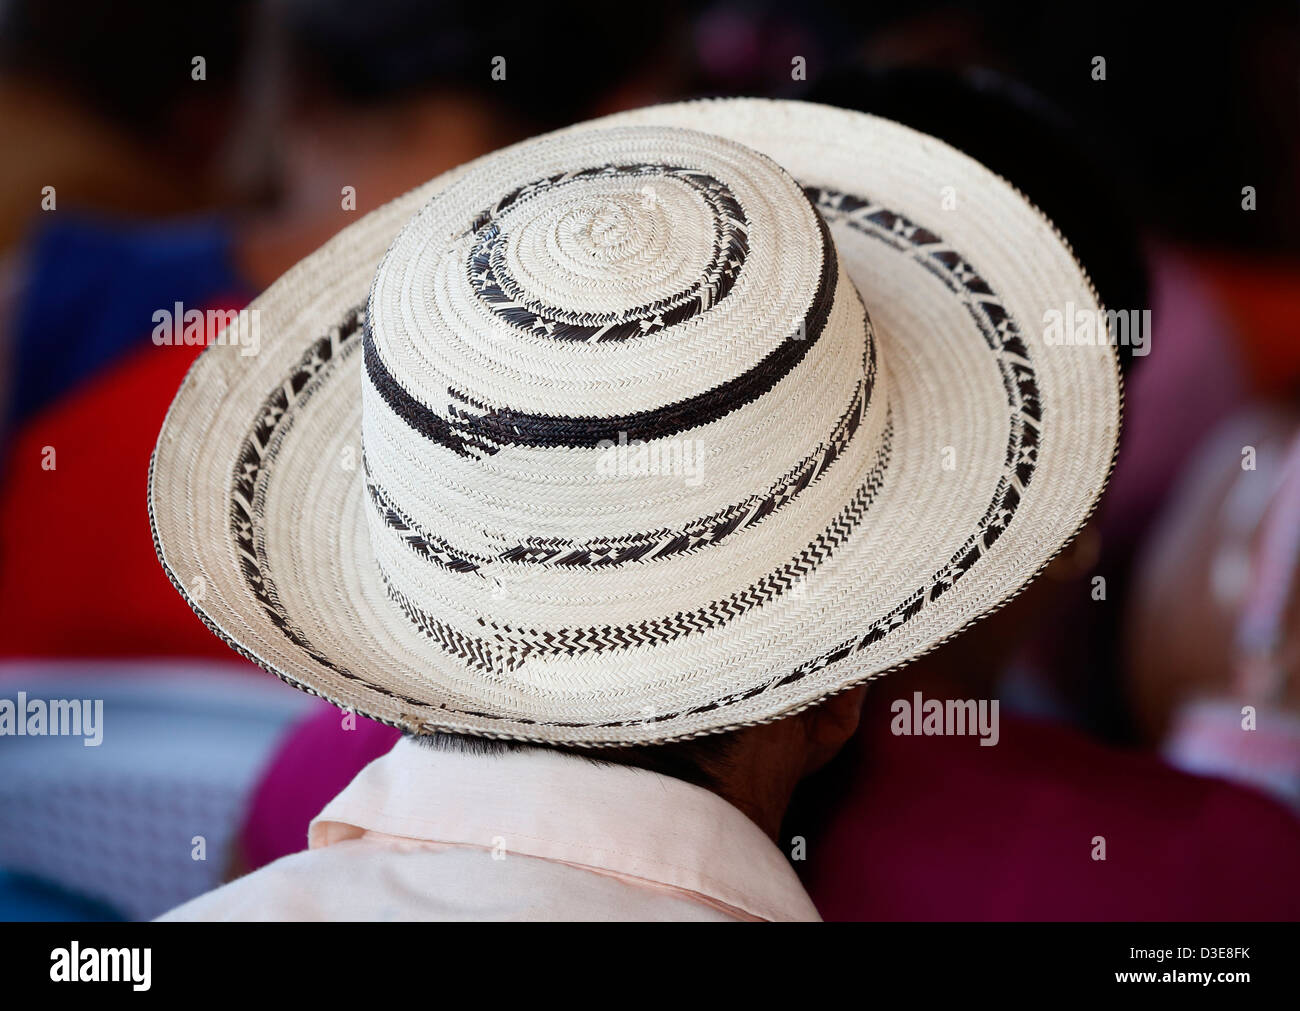 Man wearing a Panama hat Stock Photo